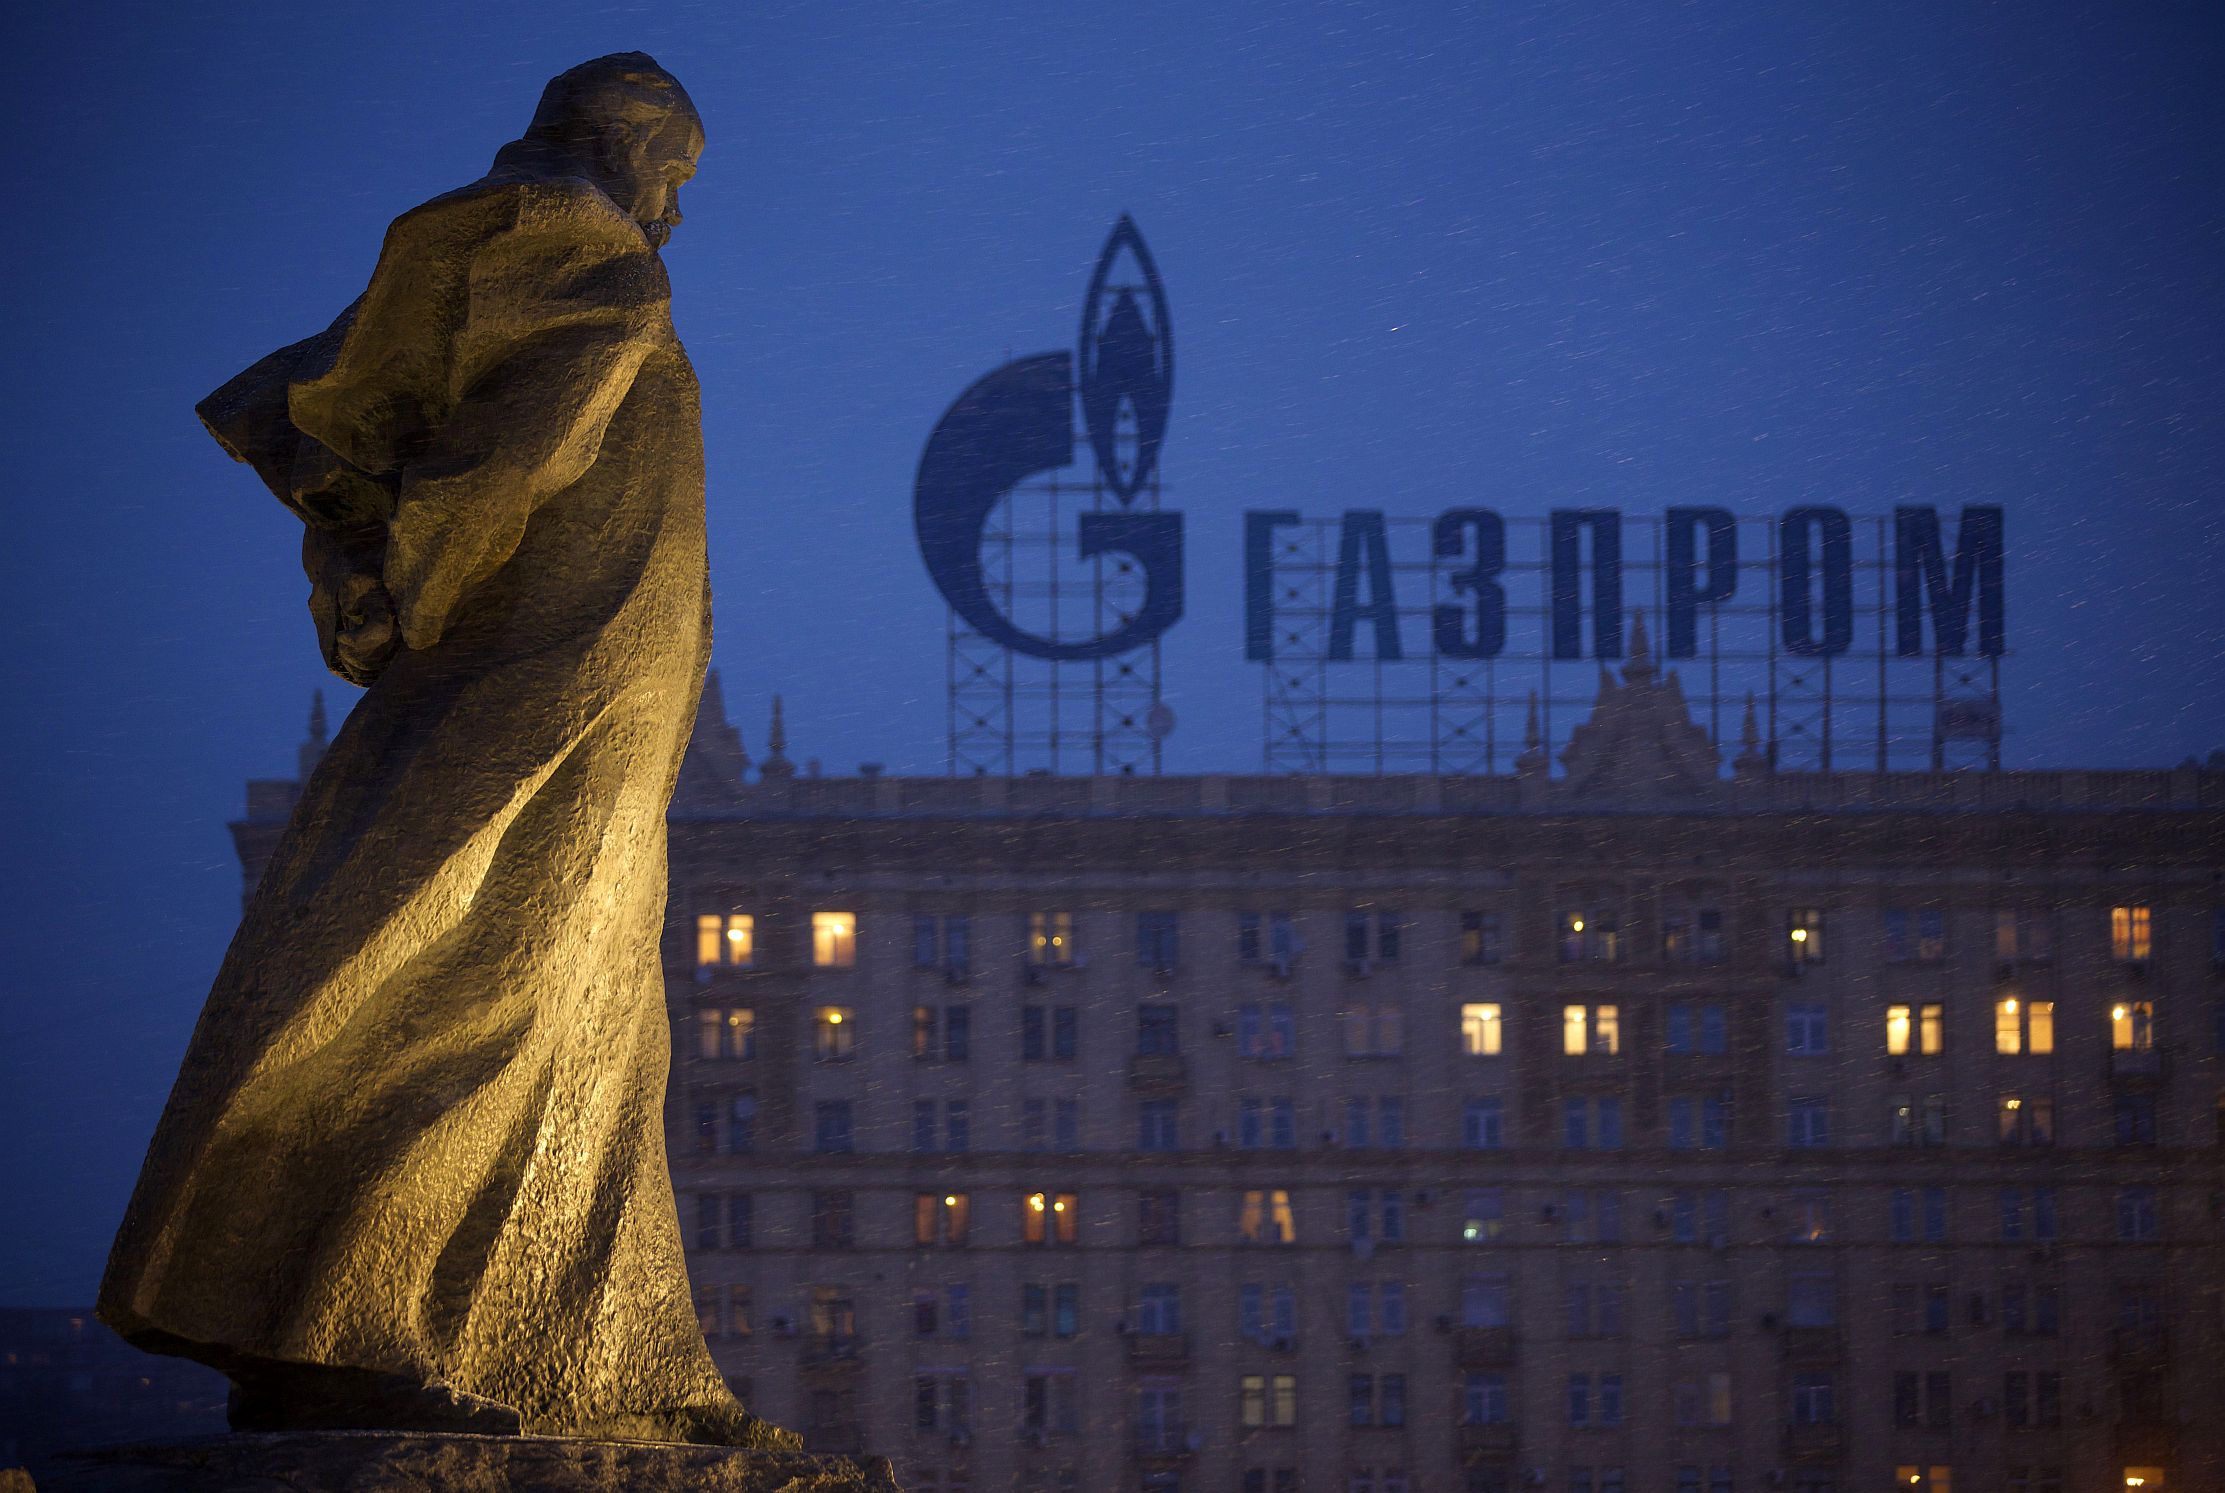 A Gazprom leállította a Török Áramlat bővítését